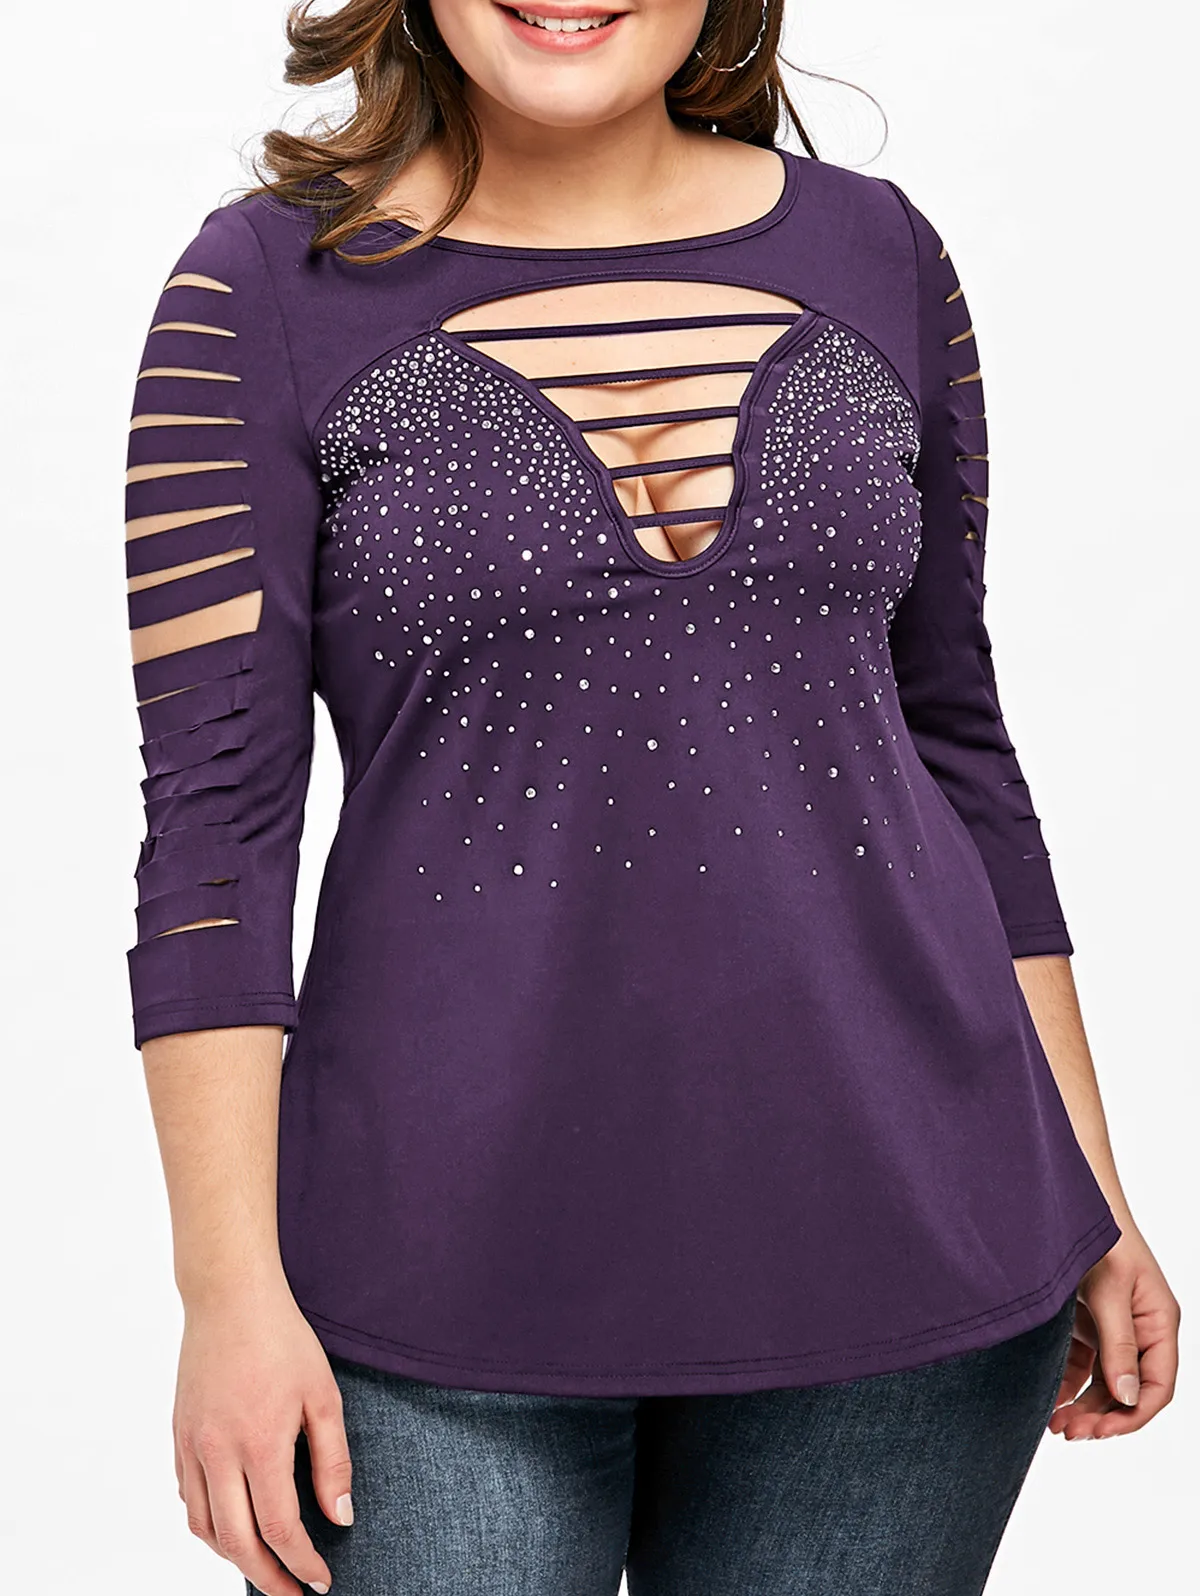 Wipalo весенние женские топы плюс Размеры 5XL лестница/пластичная Shredding футболка Для женщин Повседневное с круглым вырезом 3/4 рукава T рубашка большого размера Женская одежда - Цвет: Purple